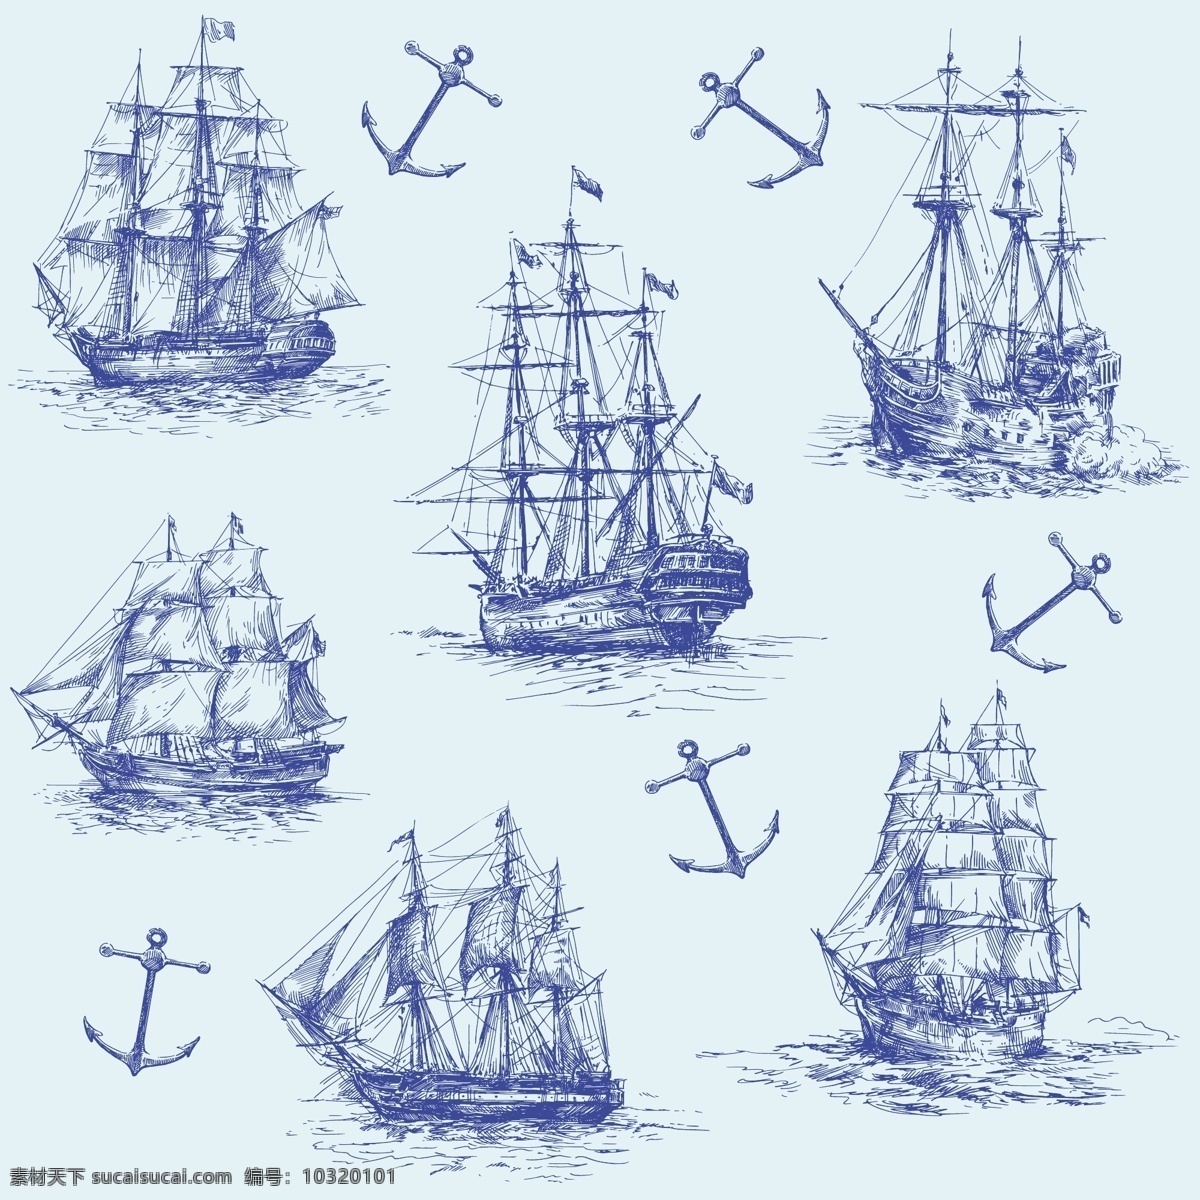 帆船 货船 轮船 轮廓 剪影 手绘 交通工具 现代科技 矢量